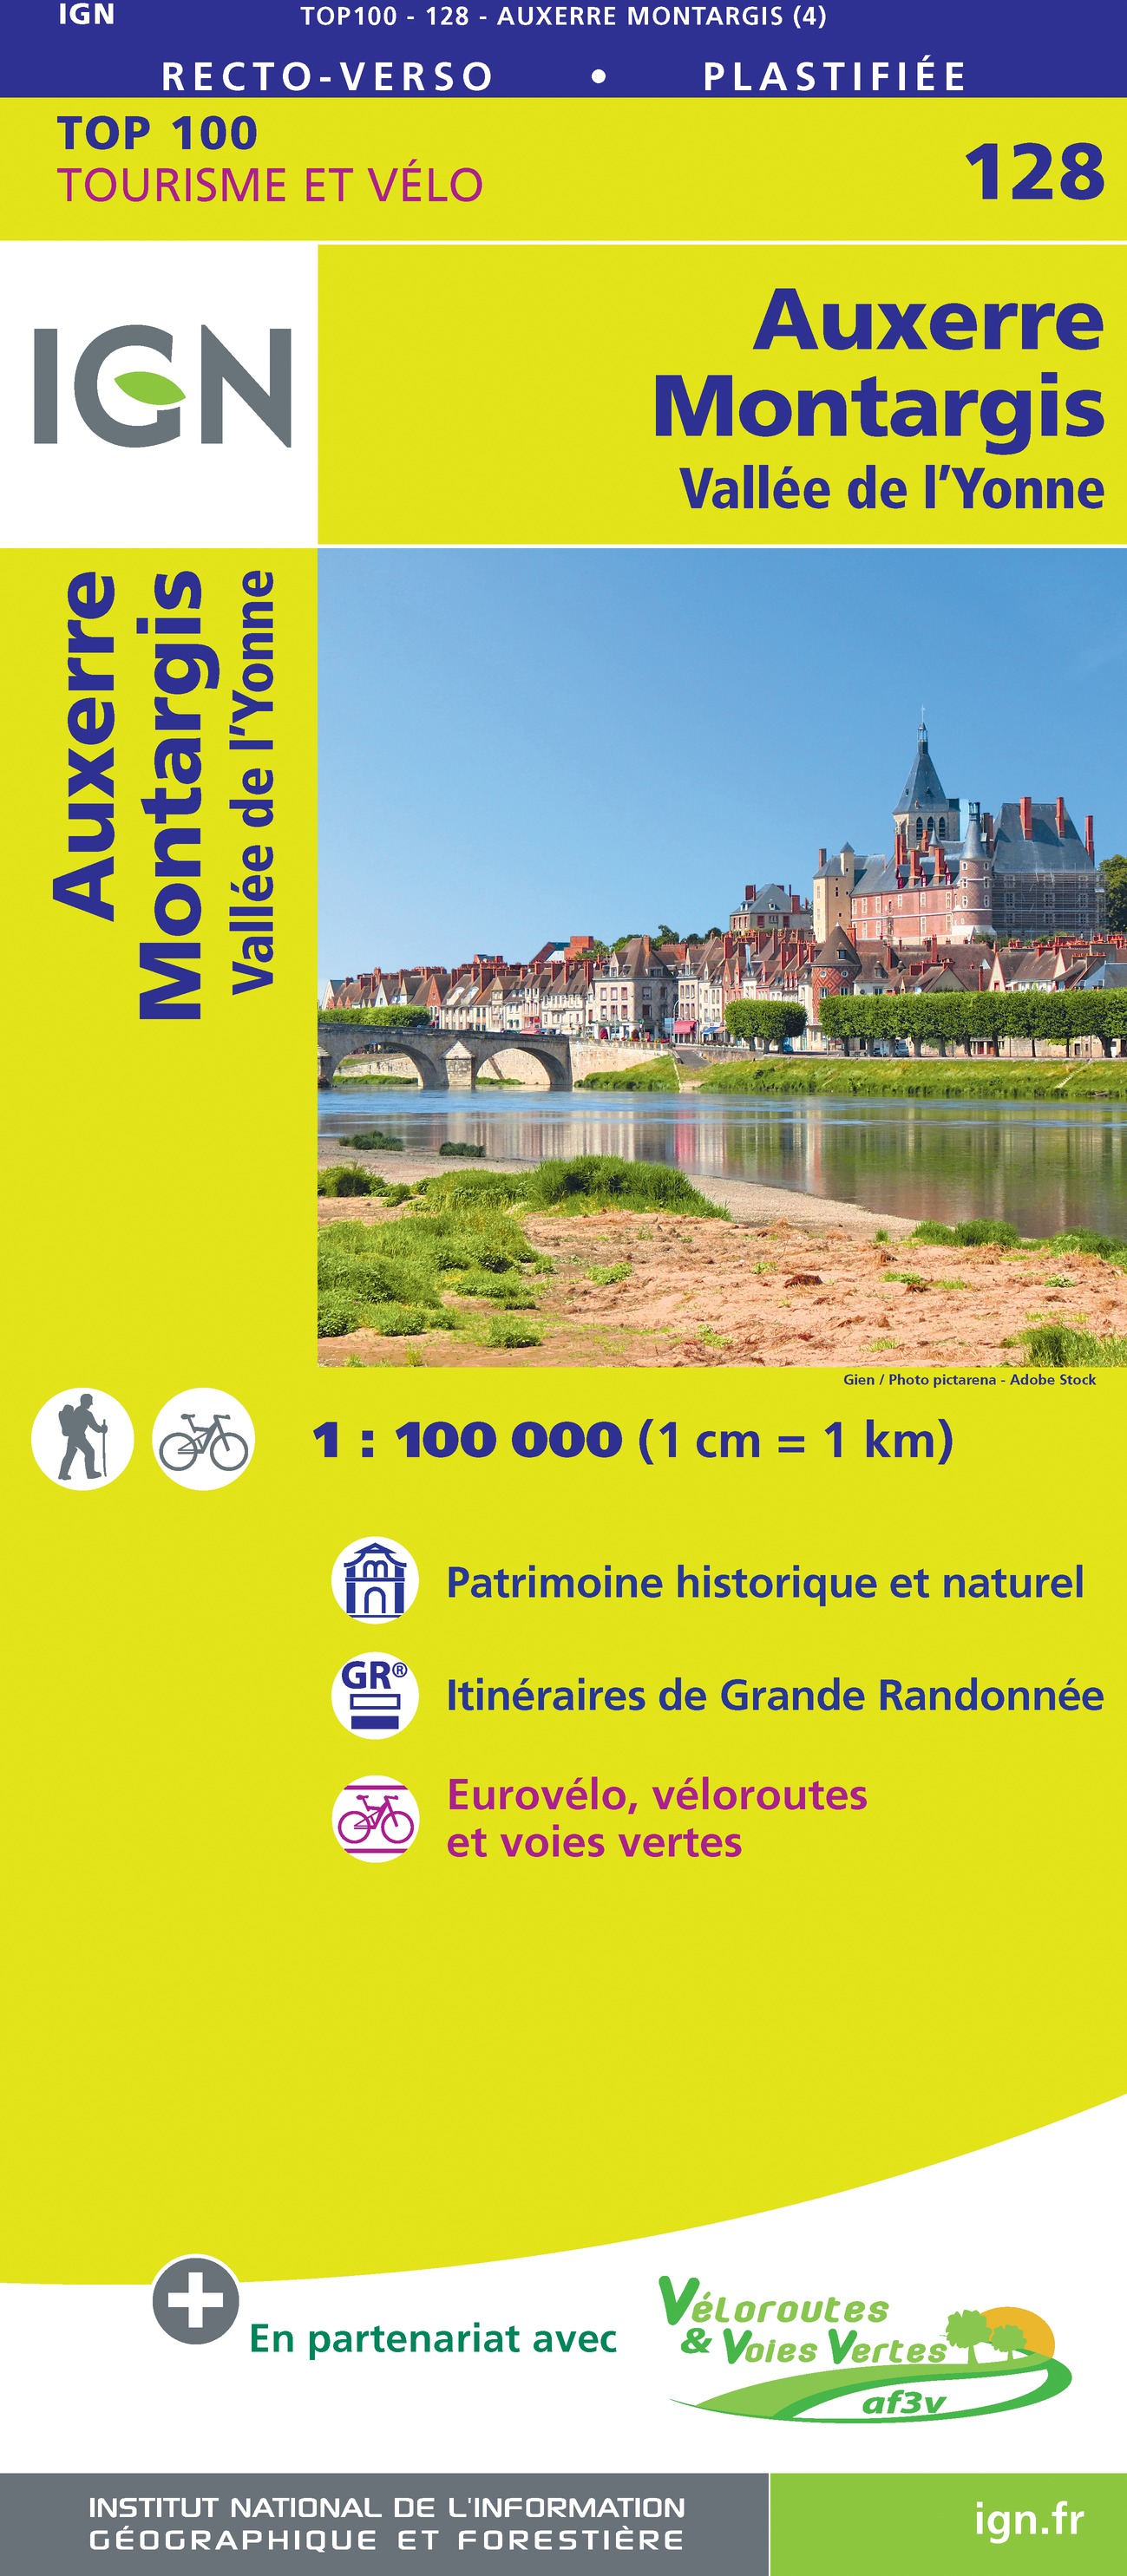 Online bestellen: Fietskaart - Wegenkaart - landkaart 128 Auxerre - Montargis | IGN - Institut Géographique National